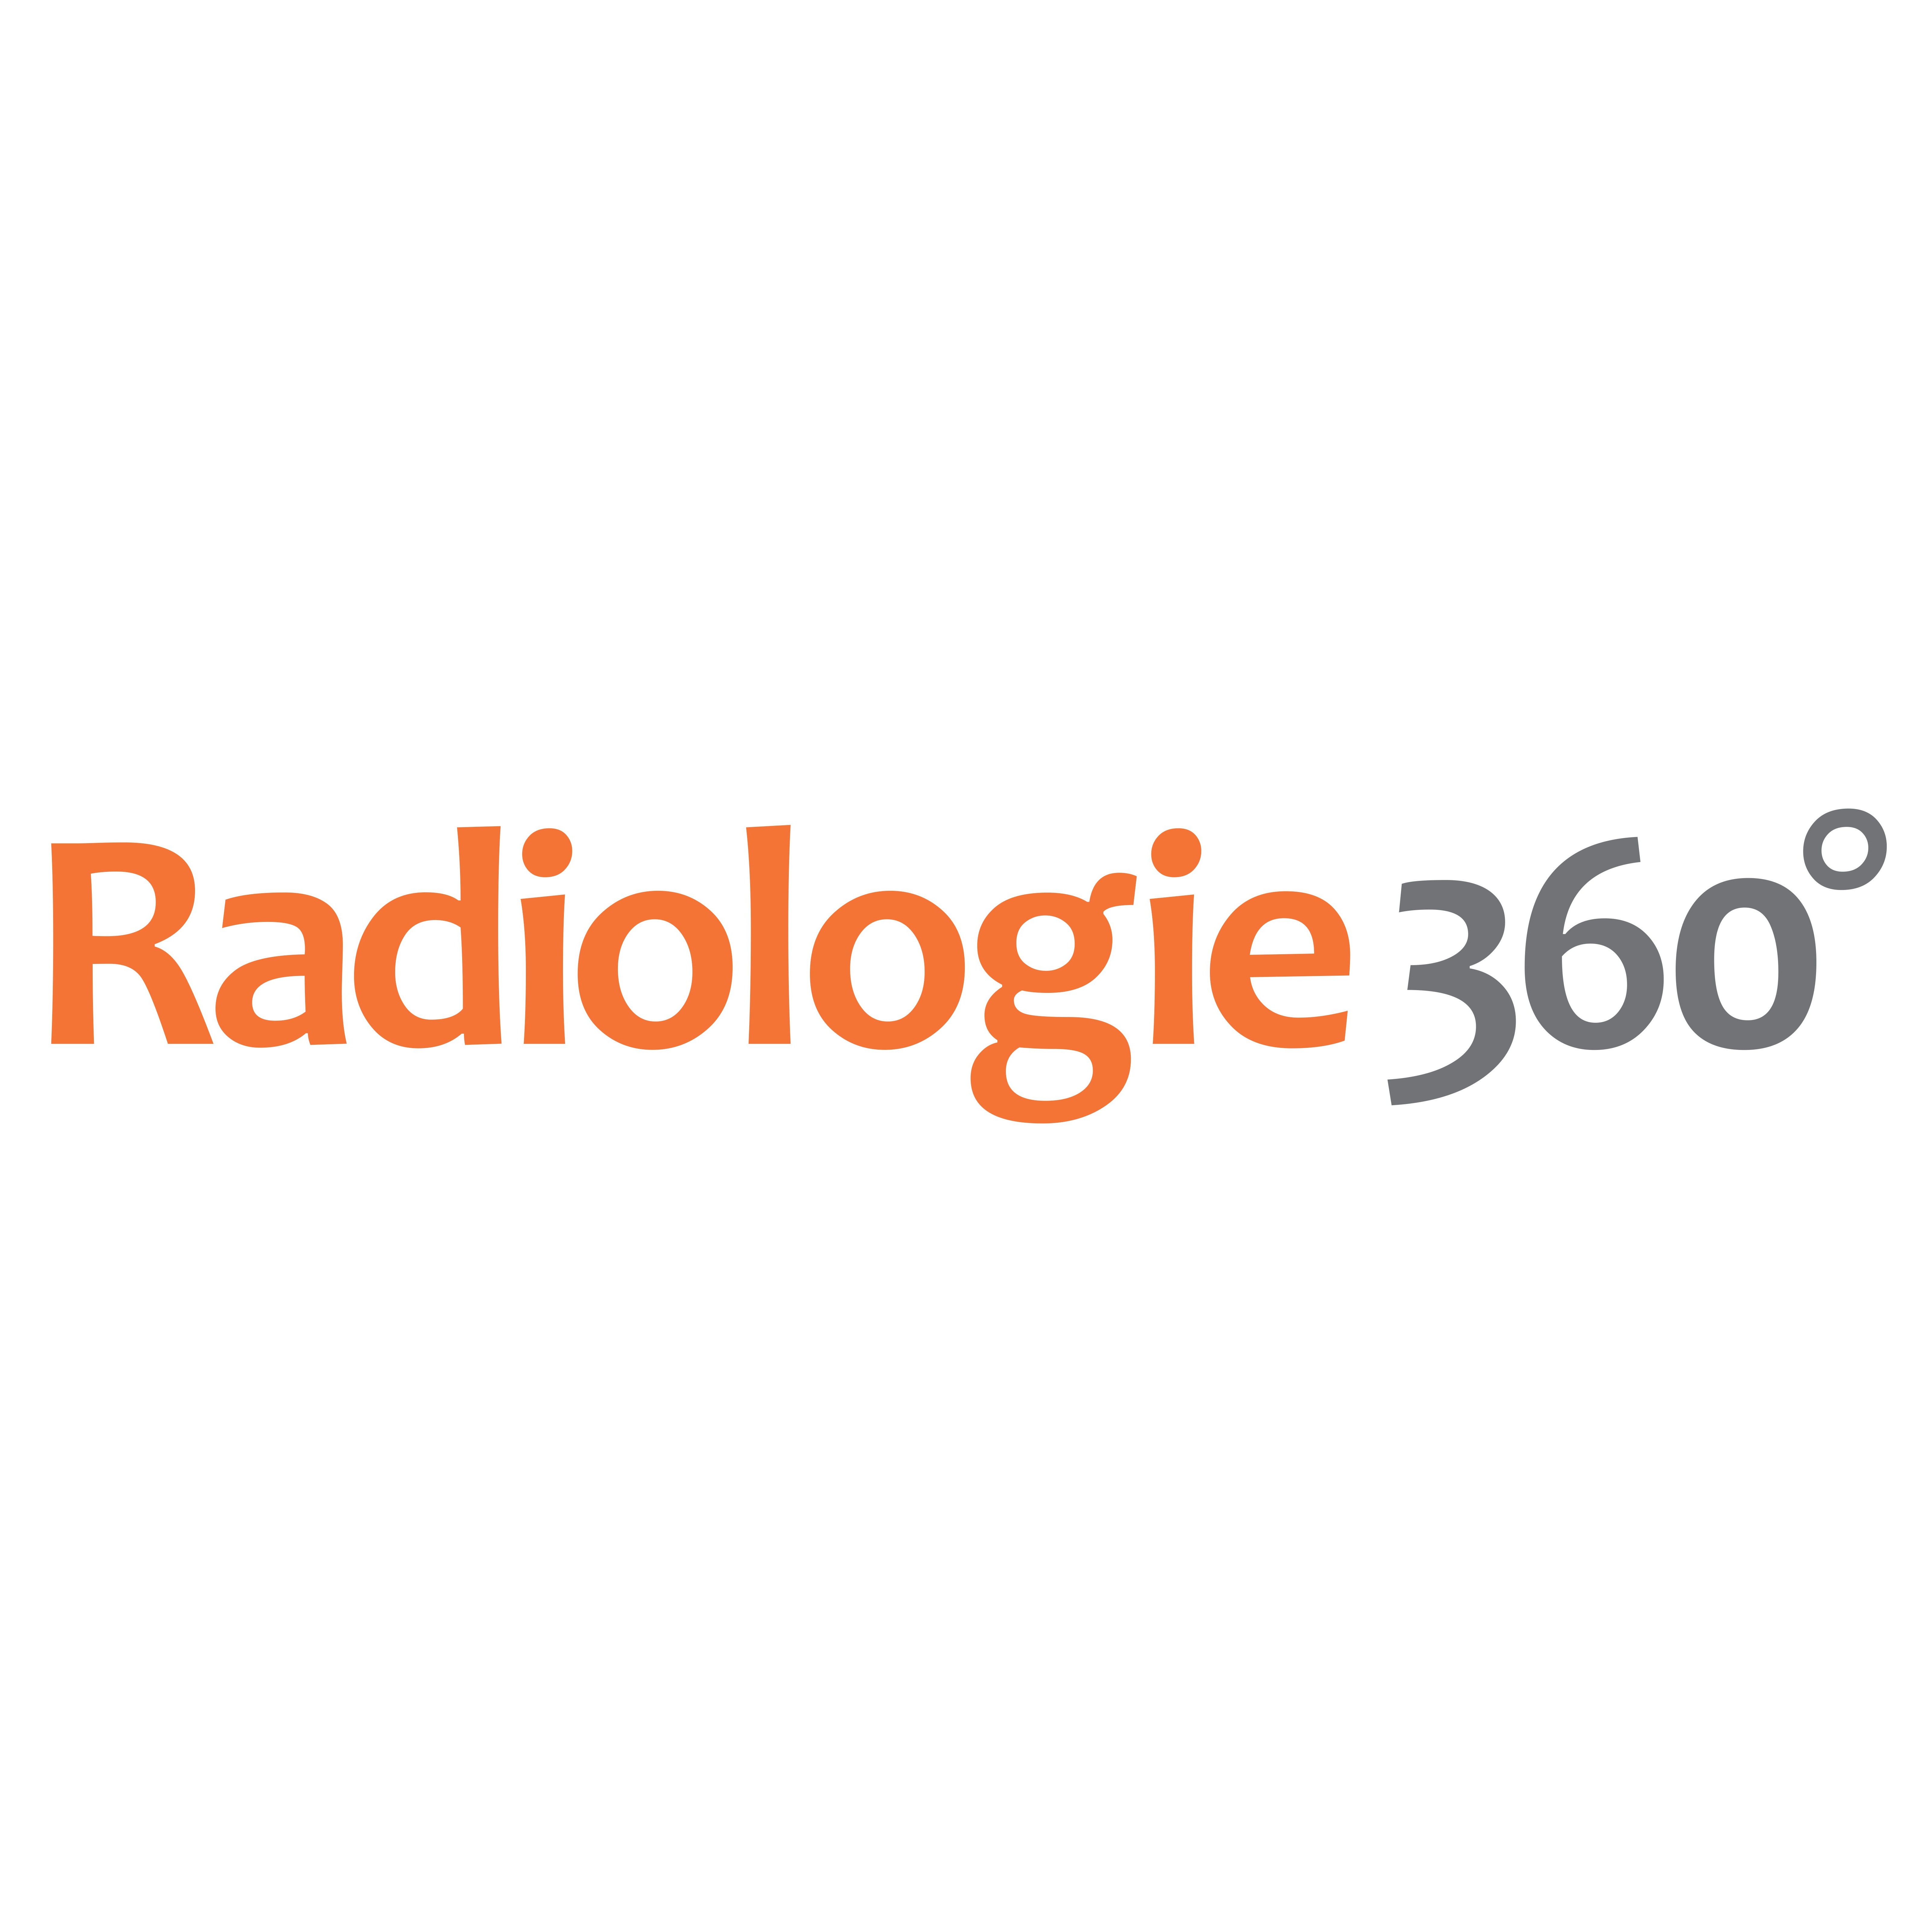 Radiologie 360° - Praxis am Sana Krankenhaus Radevormwald in Radevormwald - Logo